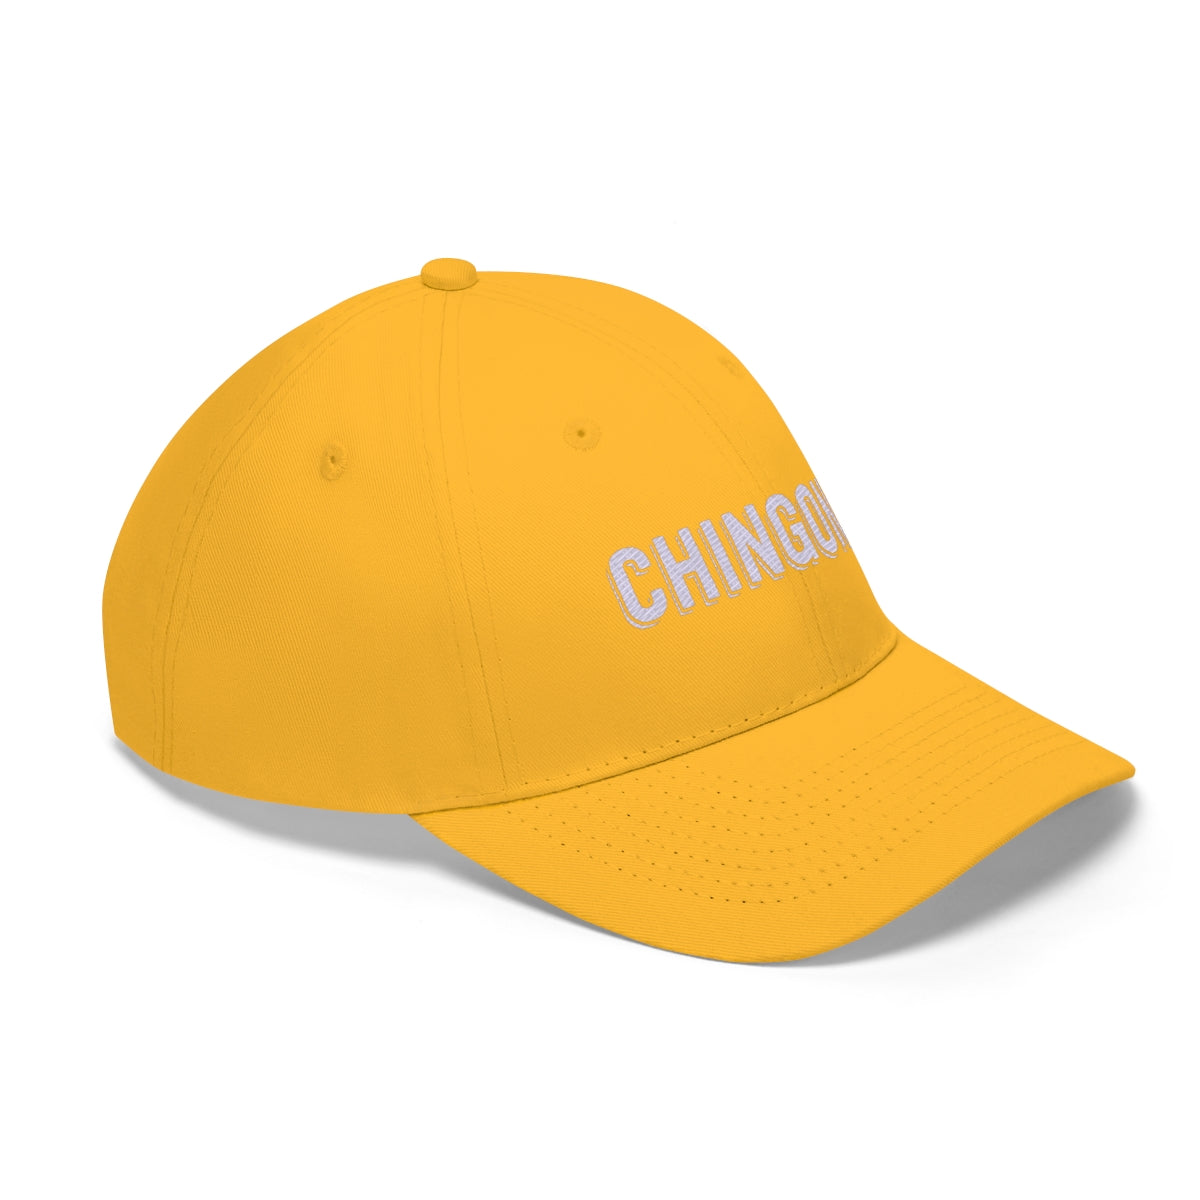 Chingona. White. Unisex Twill Hat